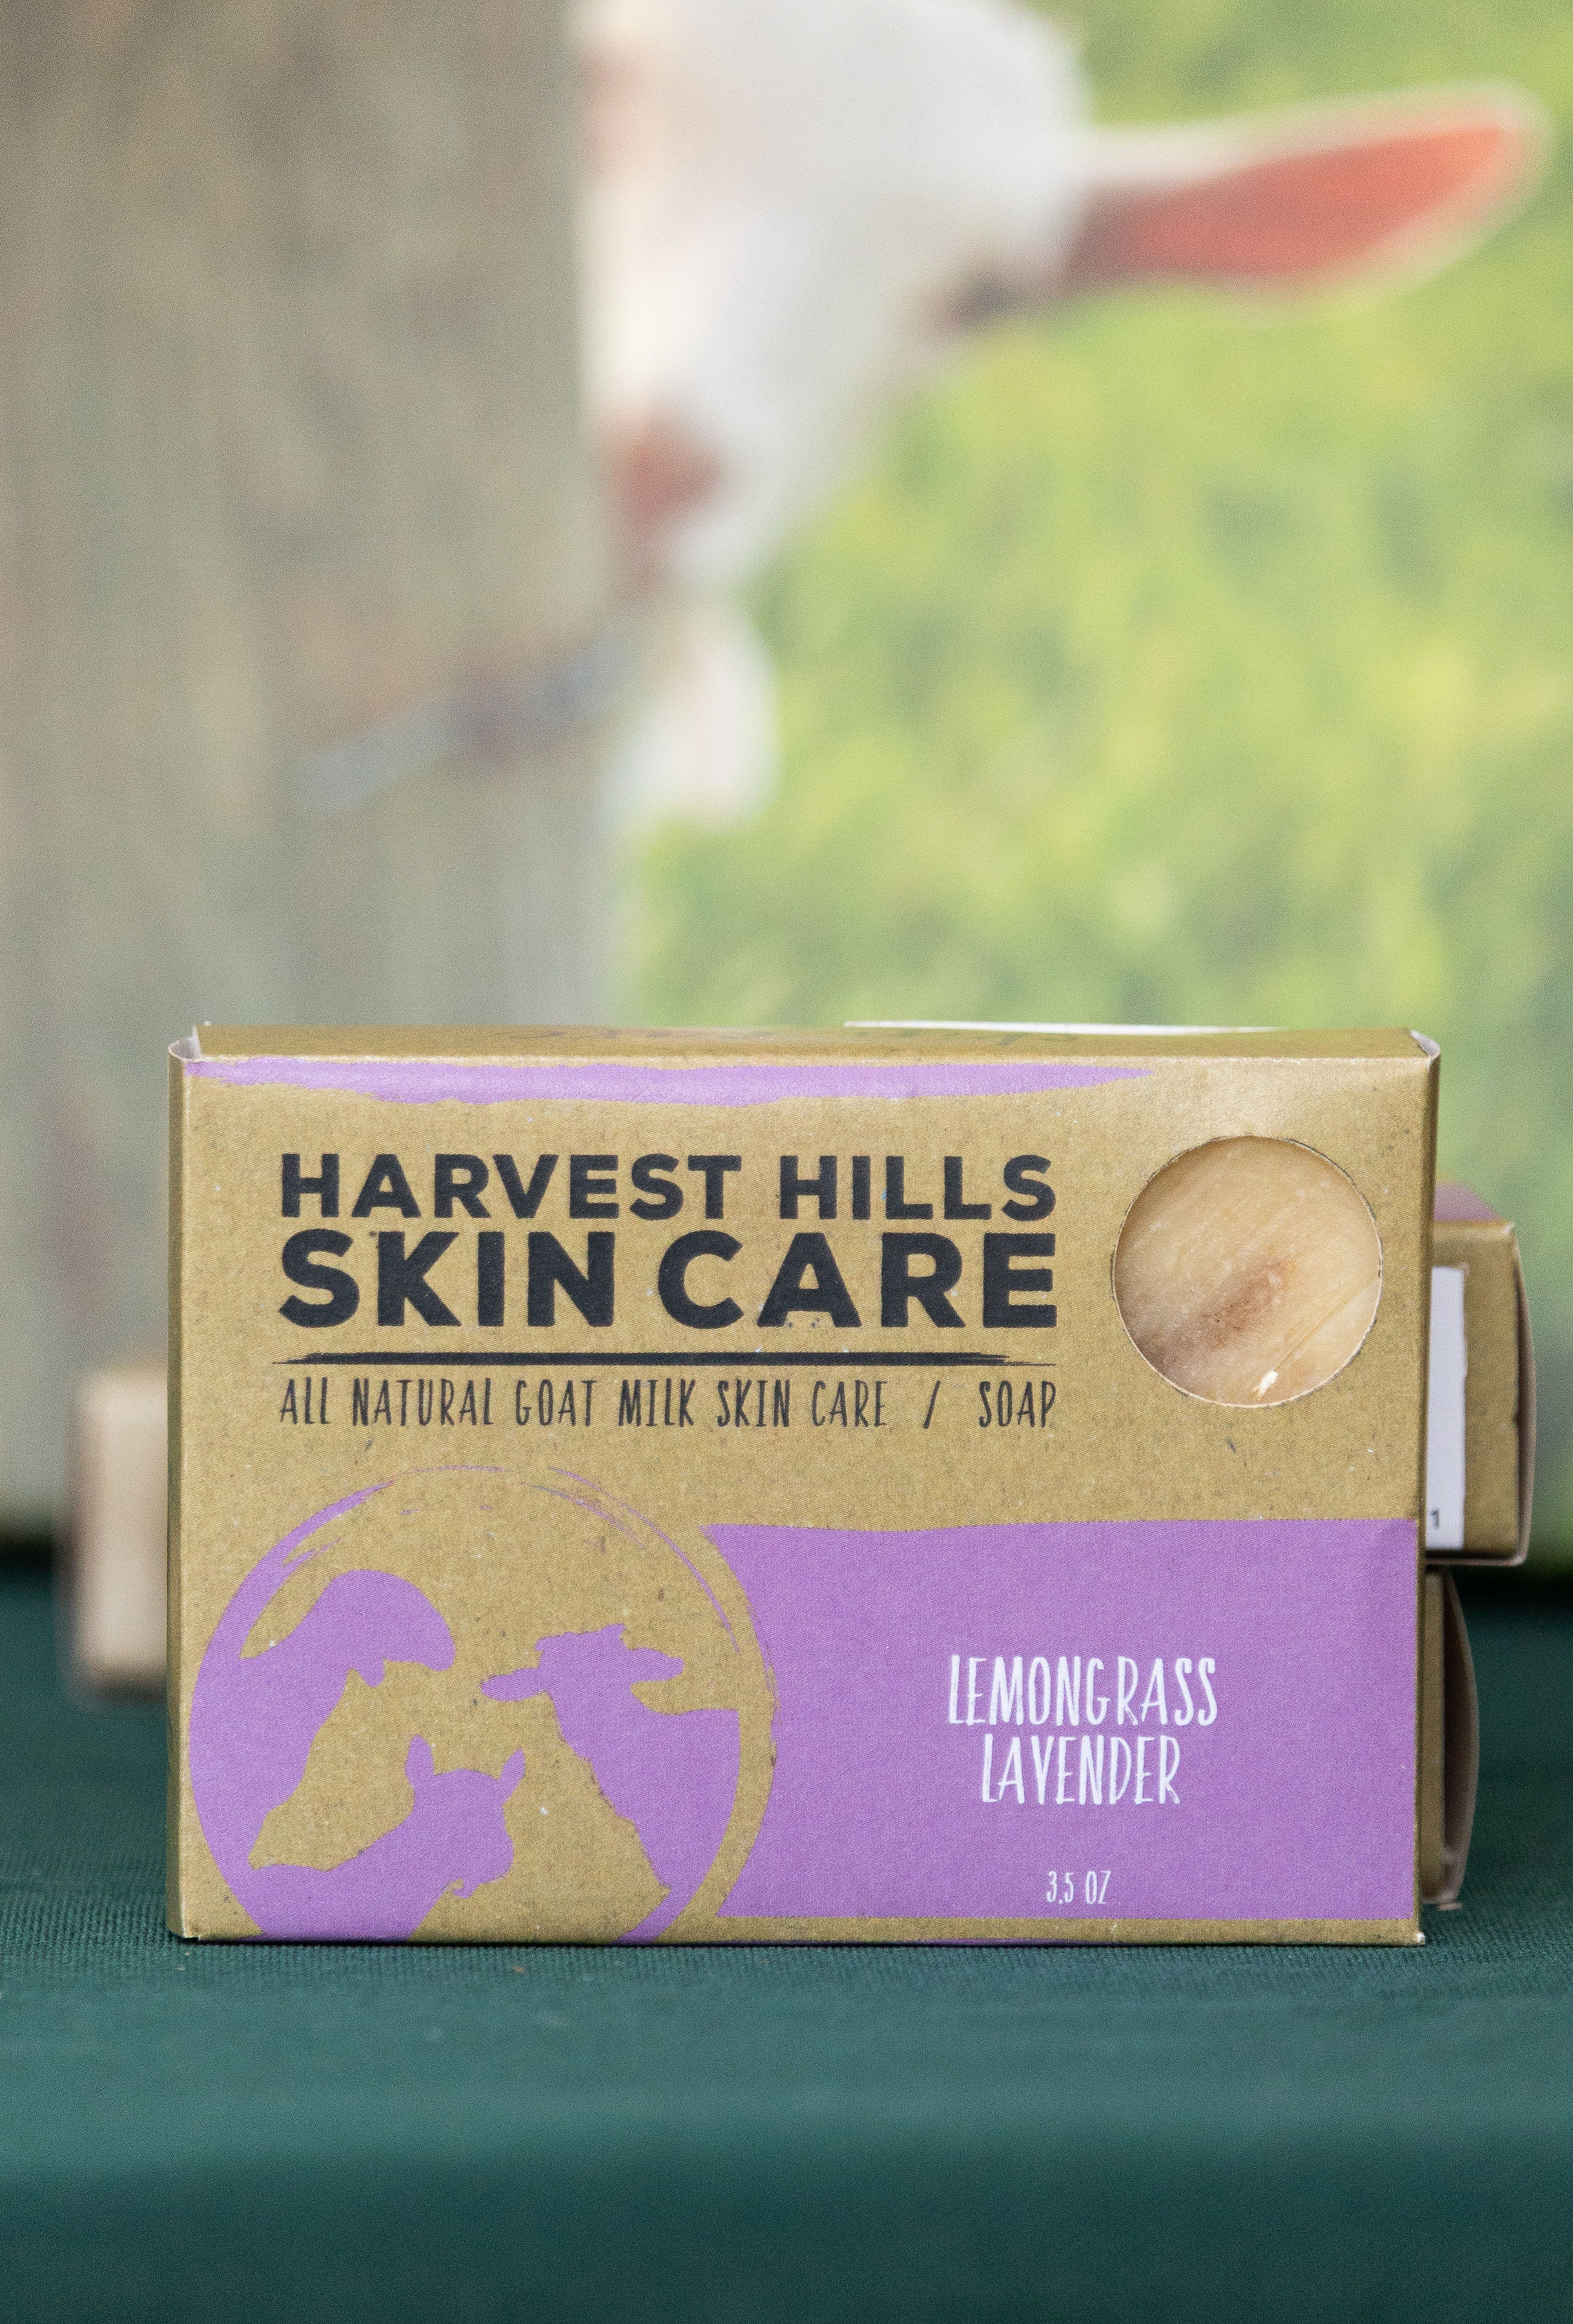 Lemongrass Lavender goat milk soap, harvest hills skin care